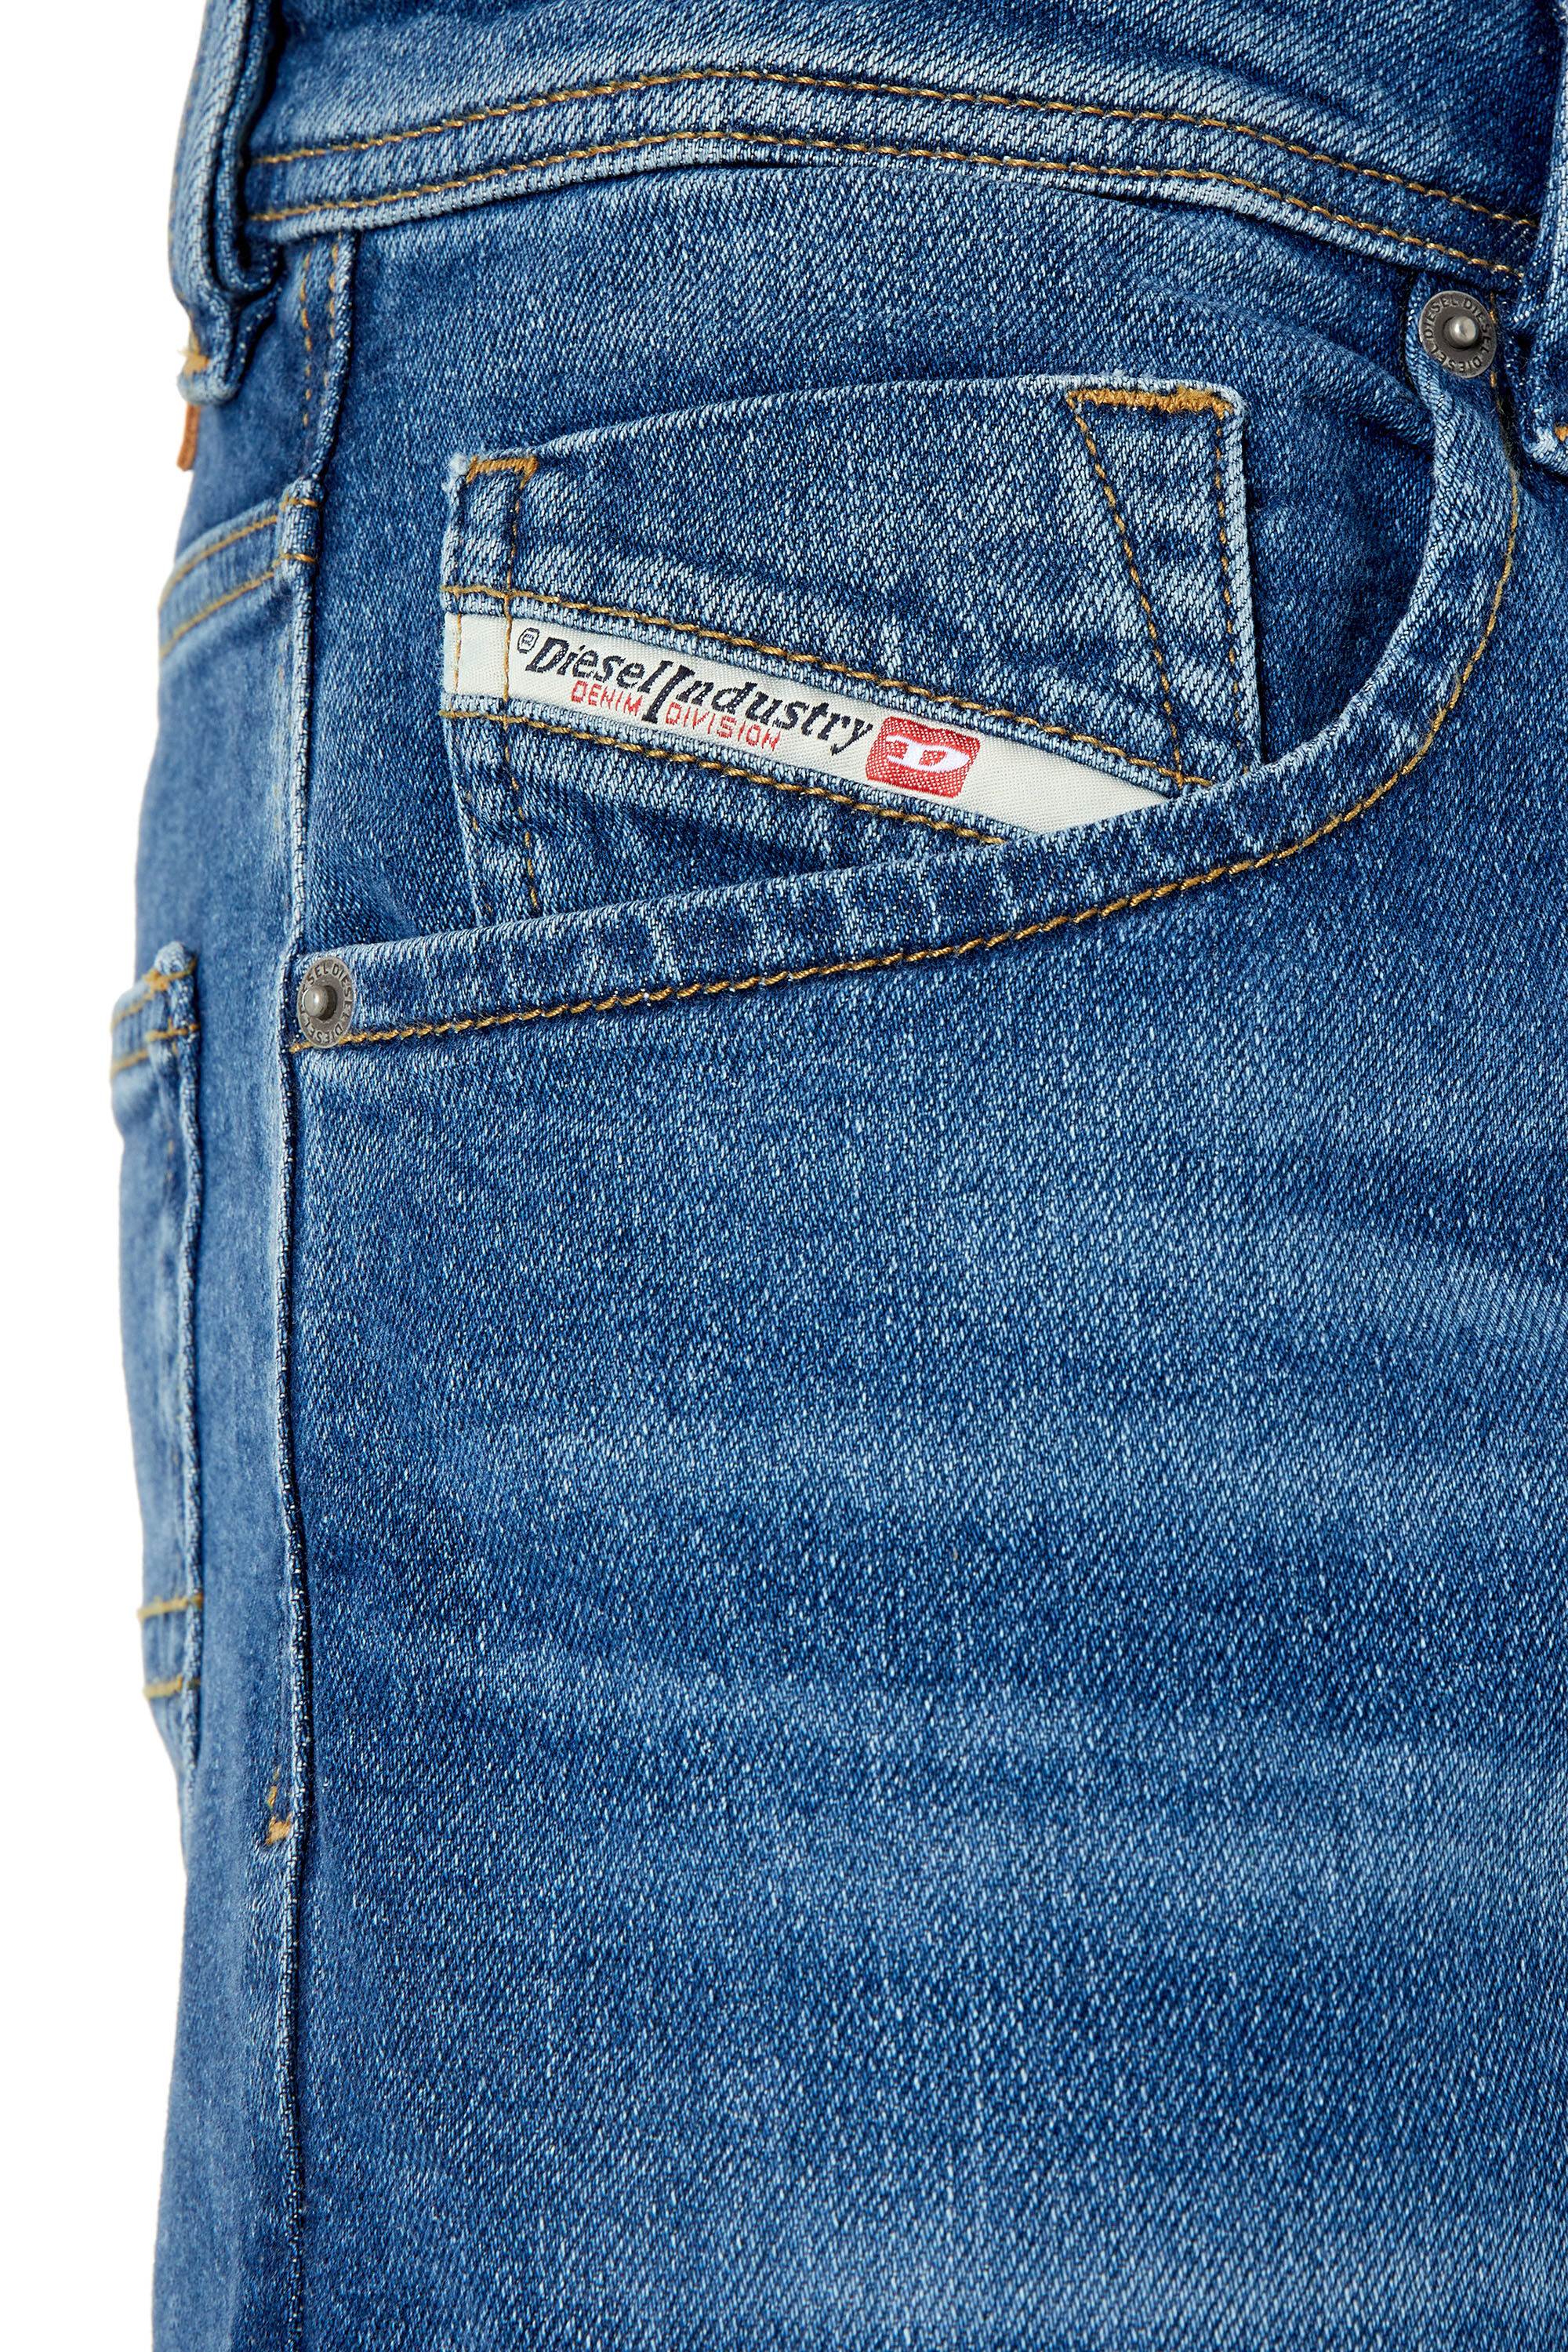 belediging rijst Idool Diesel Industry Larkee -Beex Men's Jeans hidalgomonci.com